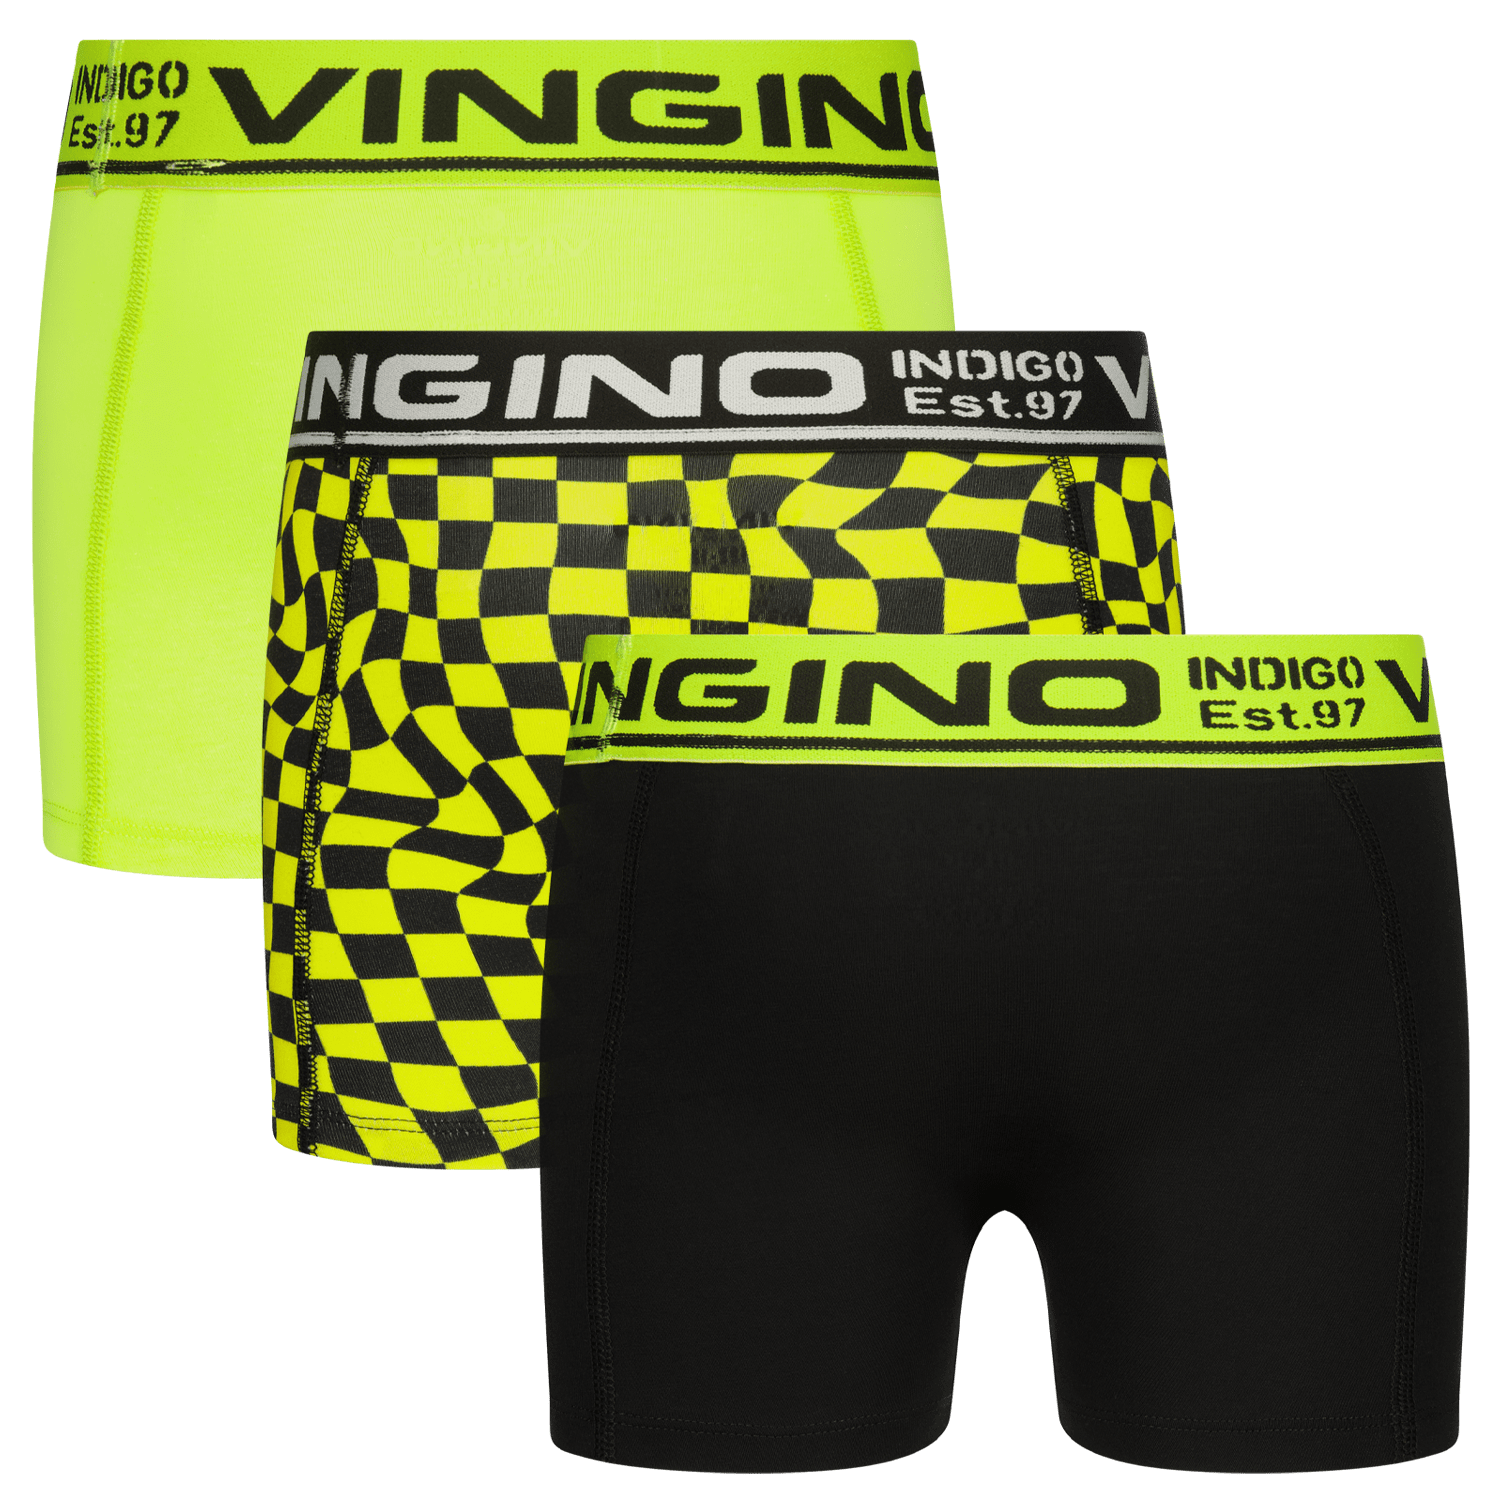 VINGINO Boxershort B-241-3 check 3 pack